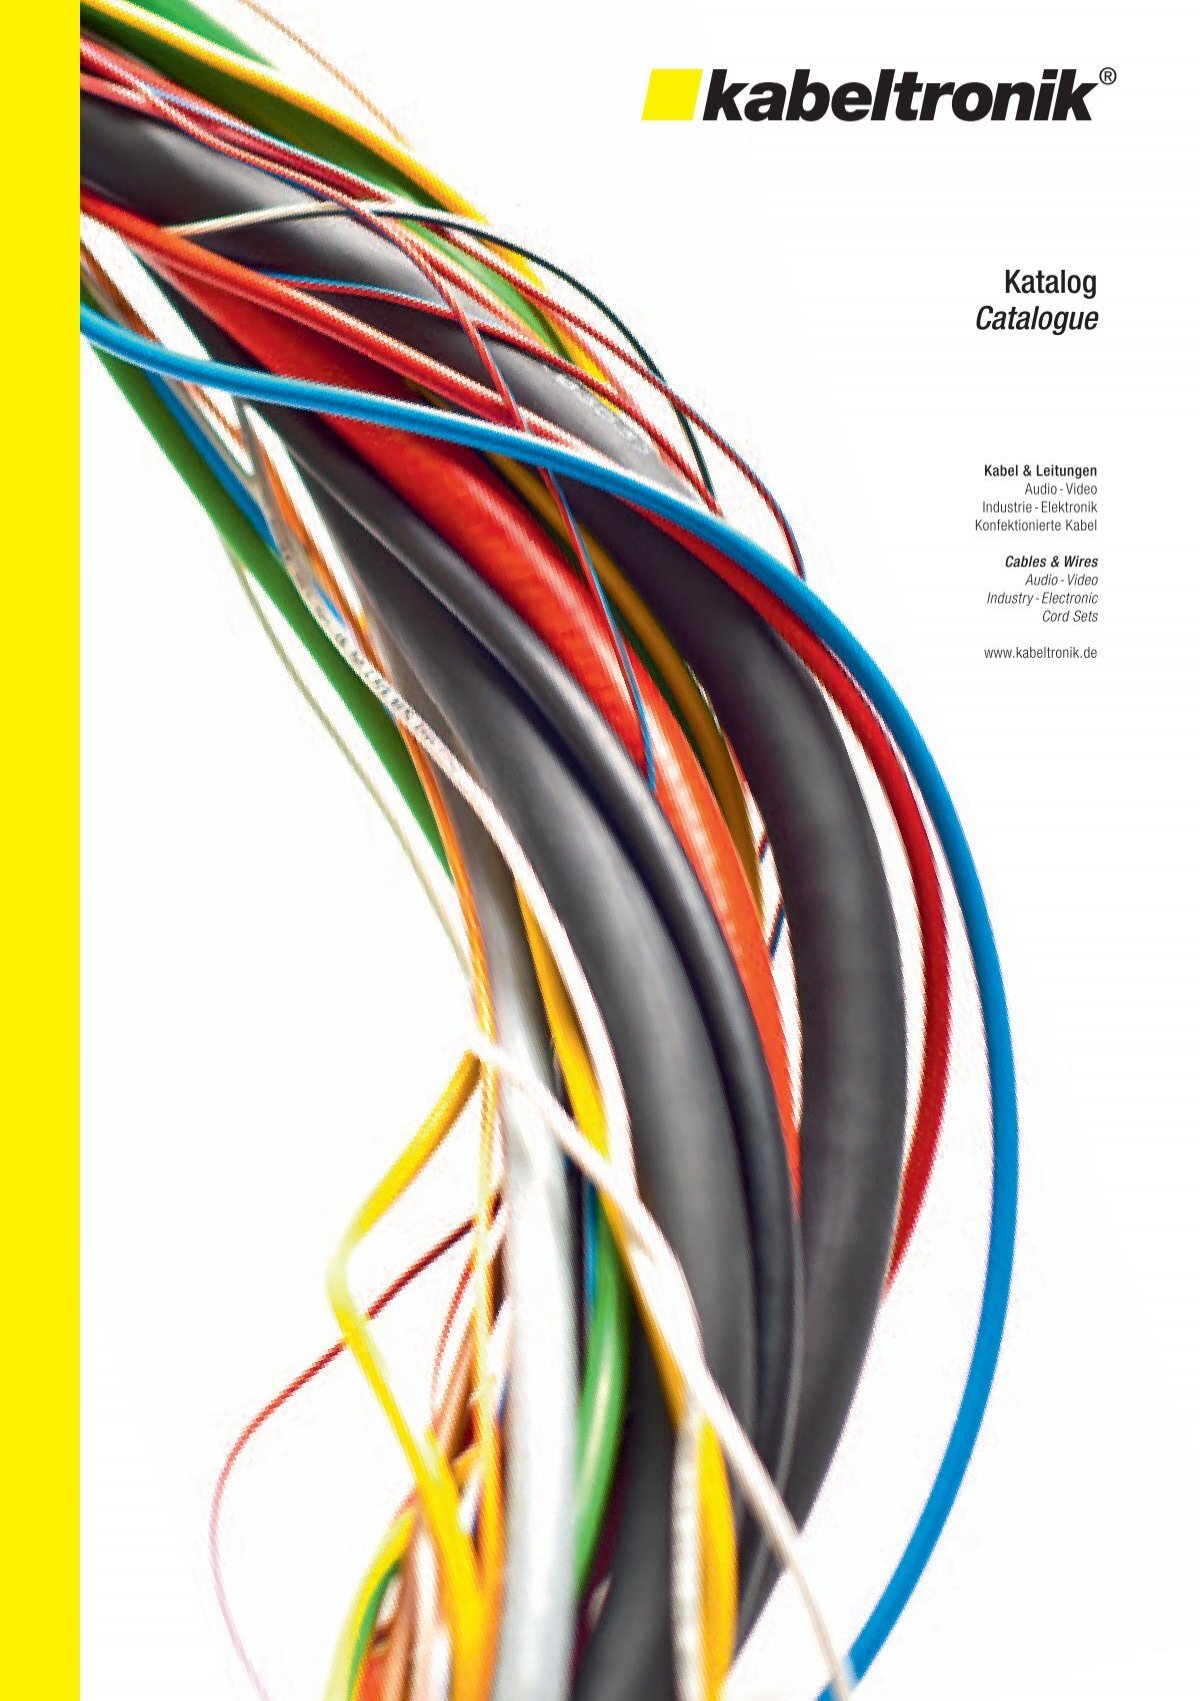 Katalog 2012 herunterladen [5 MB] - kabeltronik